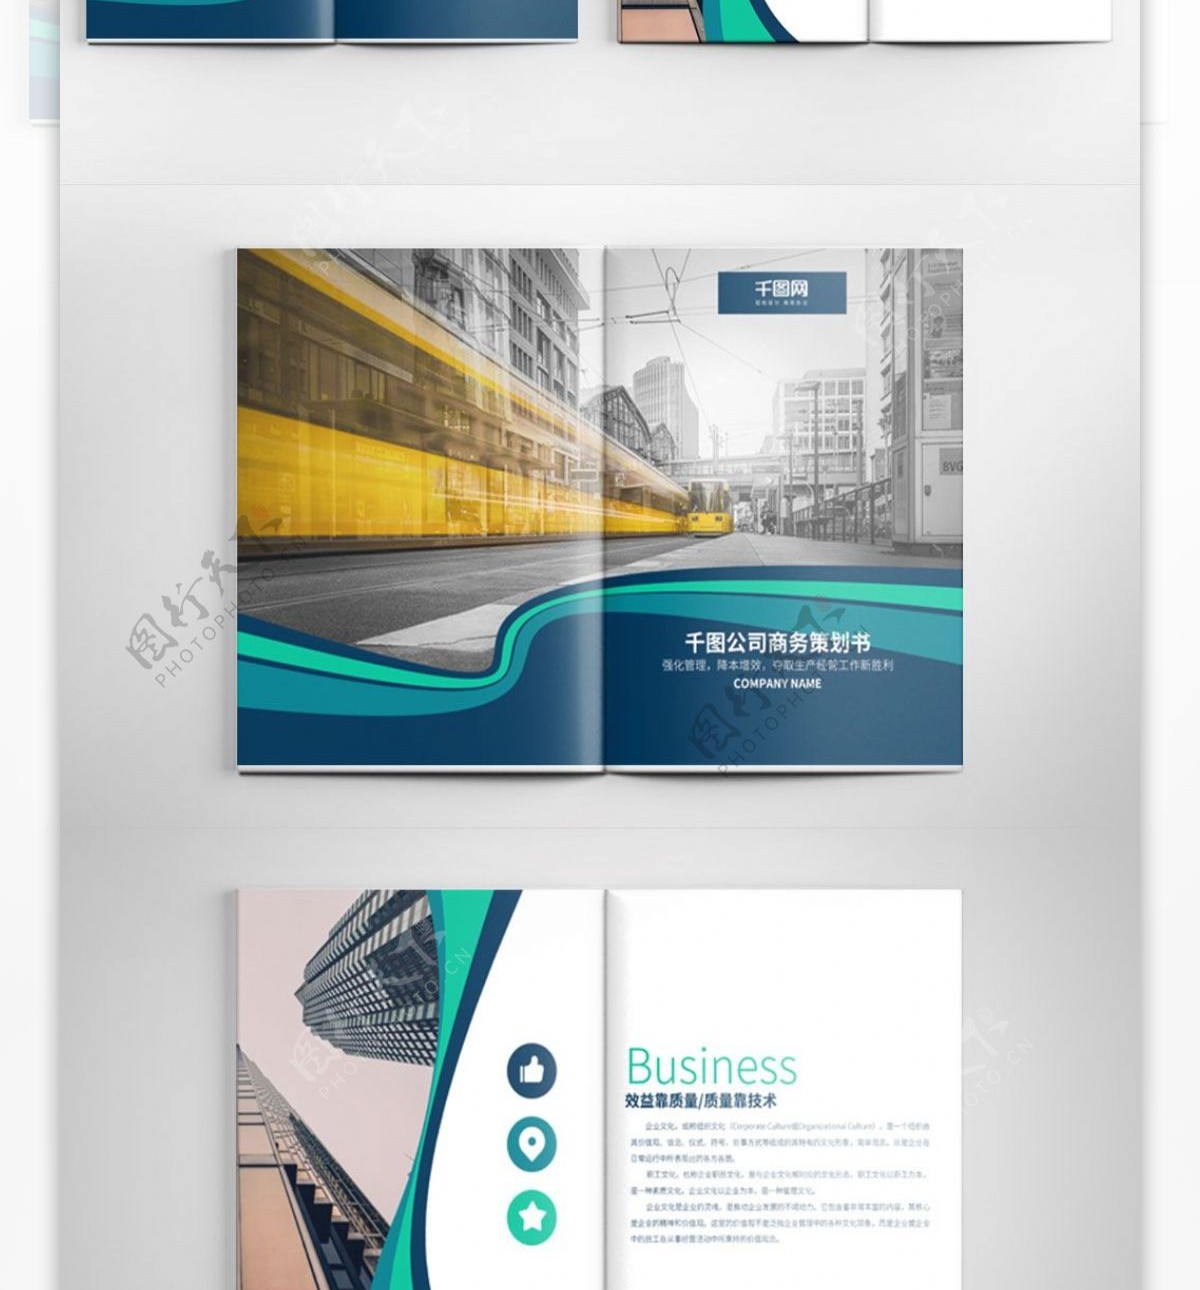 创意商务策划书宣传画册设计PSD模板